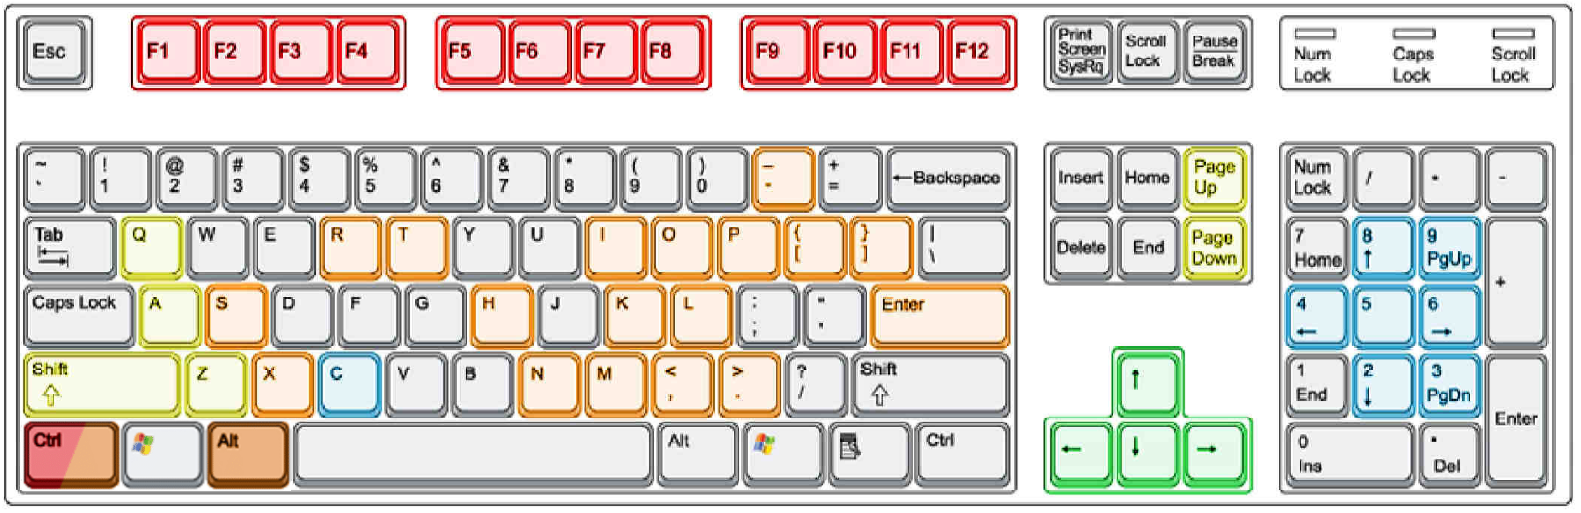 Vehicle keyboard layout